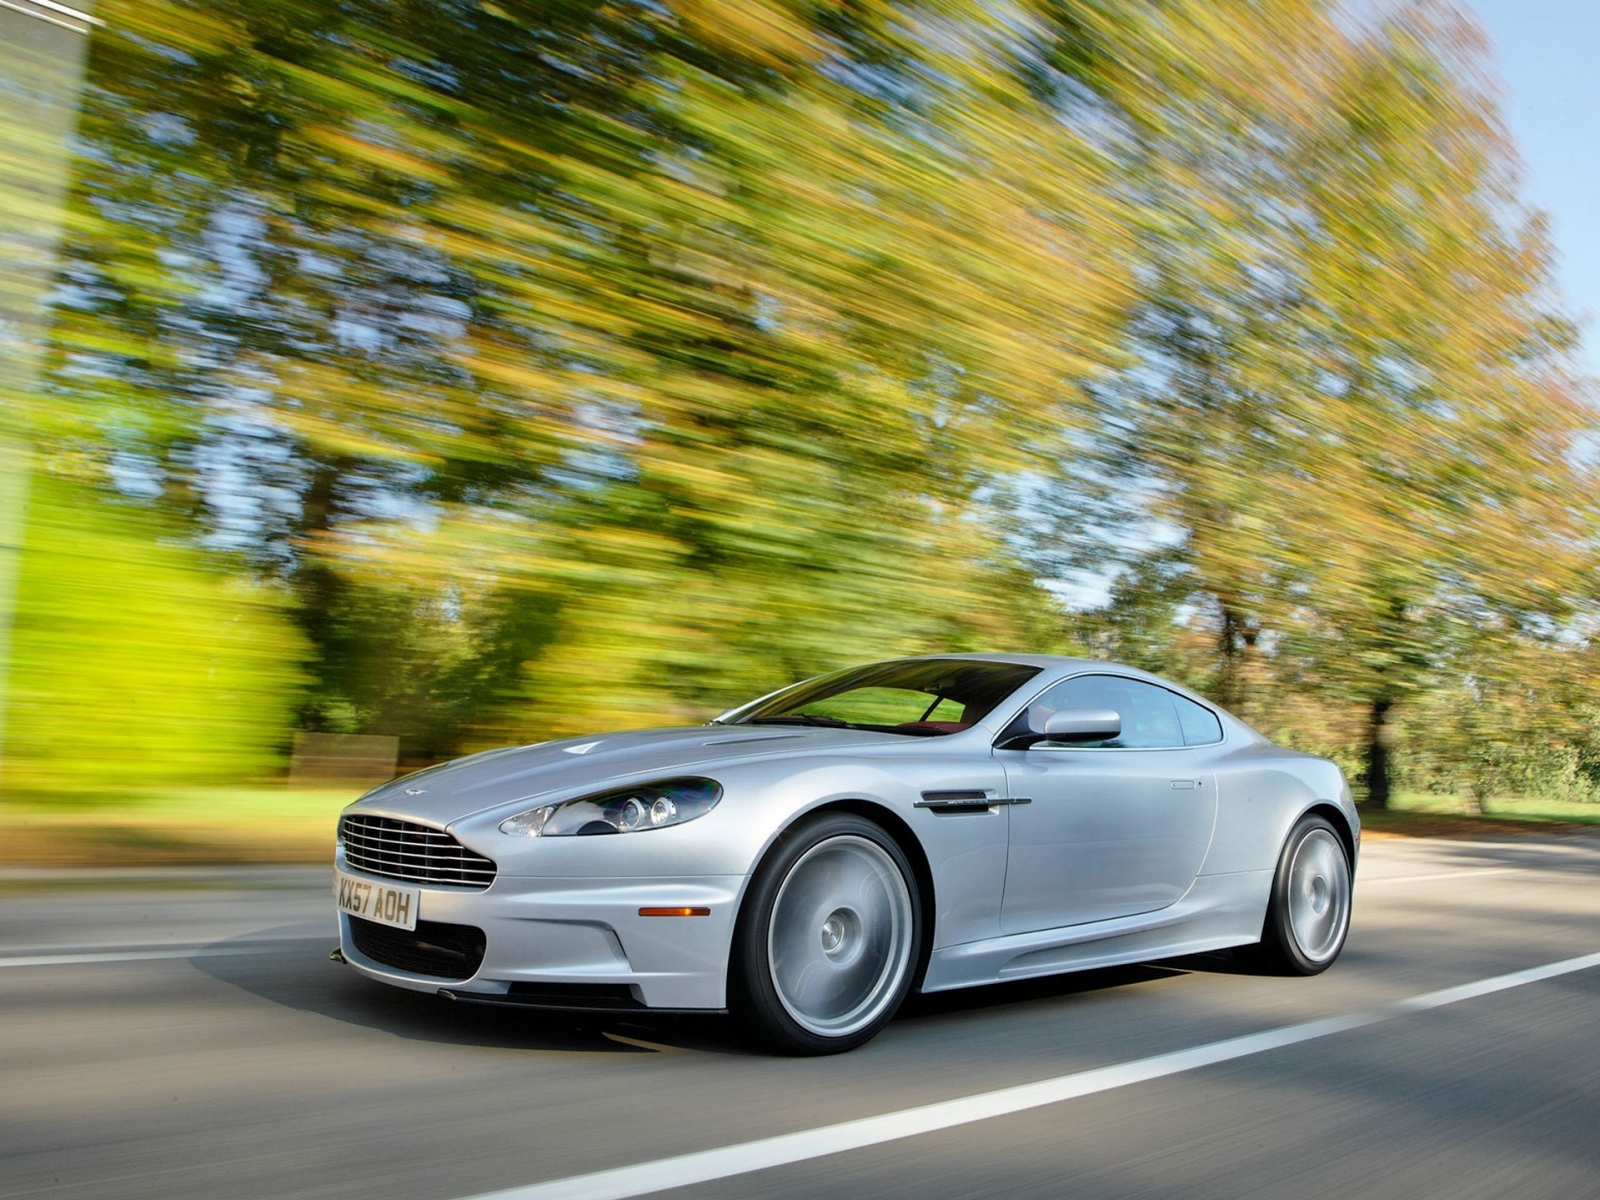 Скачать картинку Астон Мартин (Aston Martin), Транспорт, Машины в телефон бесплатно.